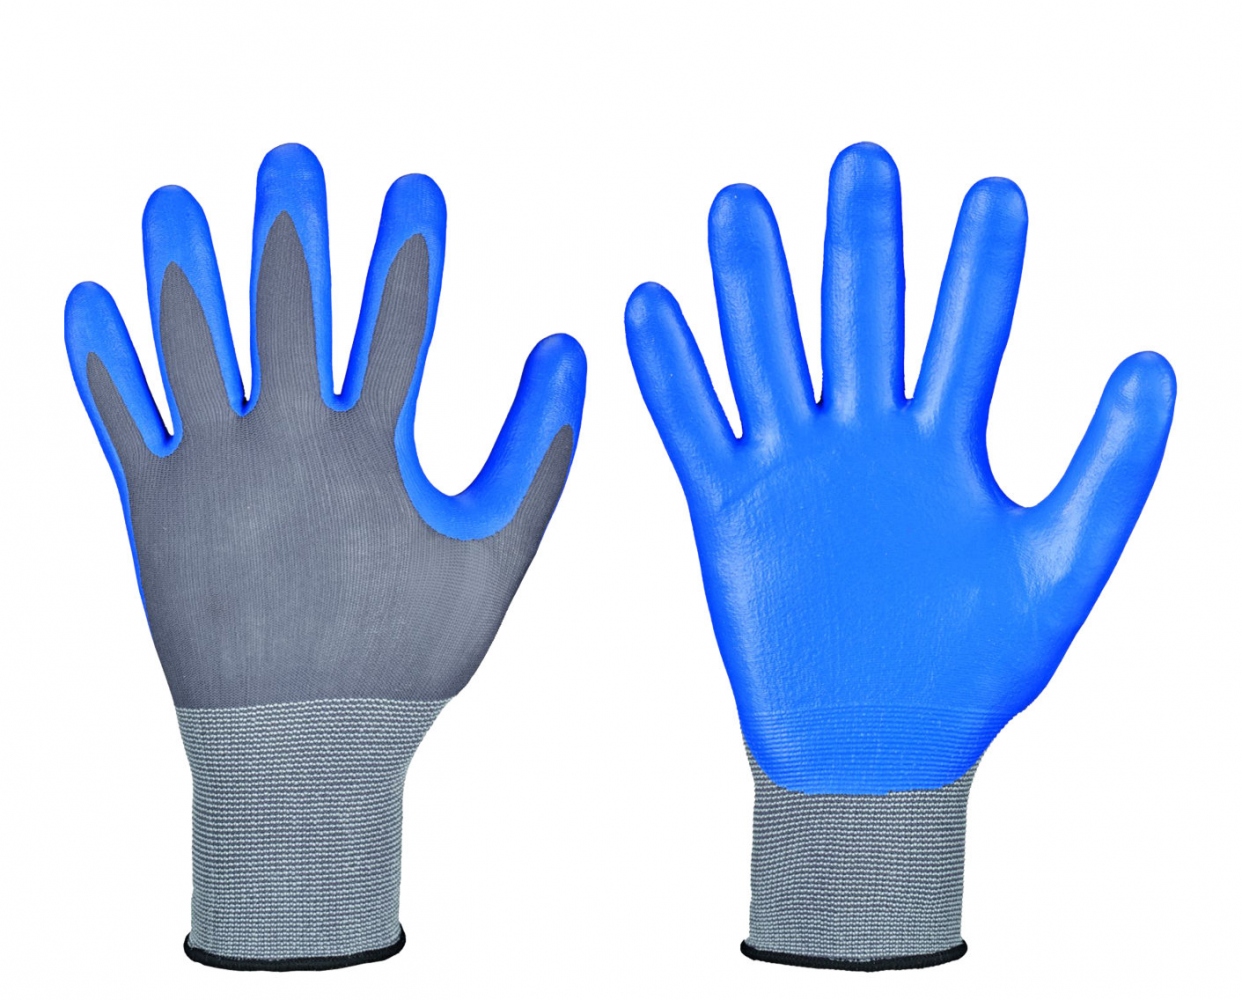 pics/Feldtmann 2016/Handschutz/google/stronghand-0655-deltana-nitrile-safety-gloves-blue2.jpg